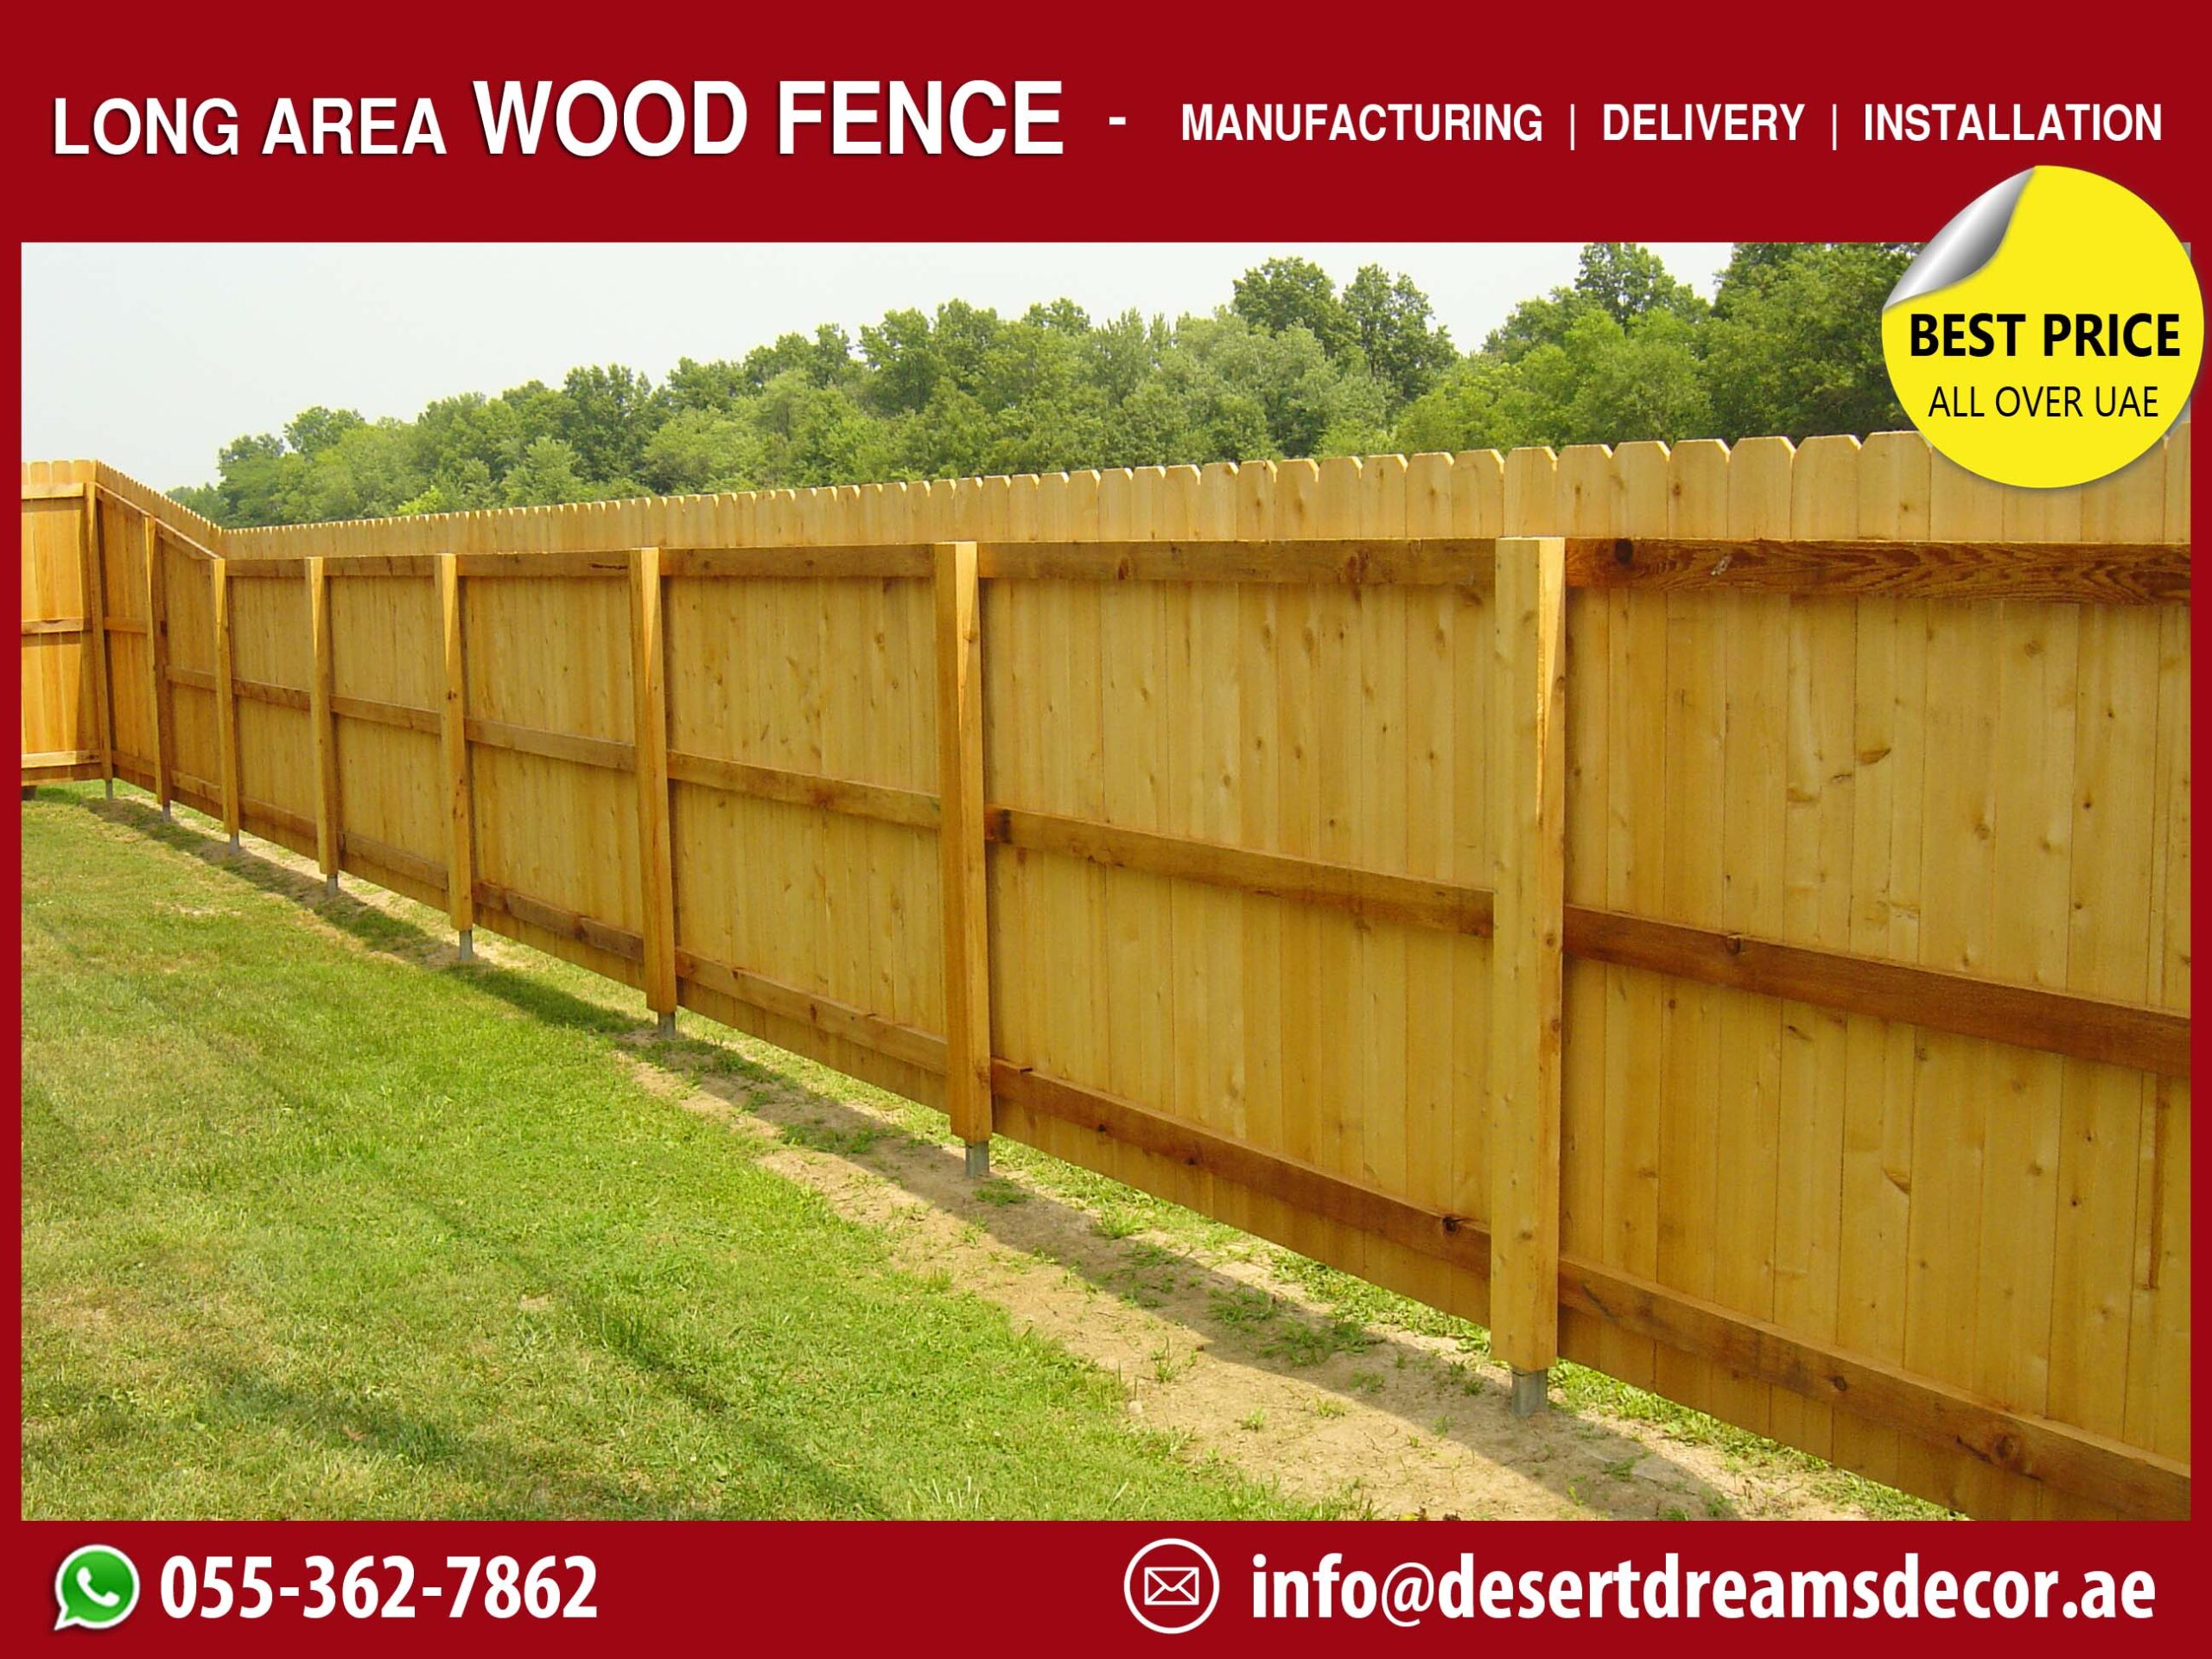 Long Area Wooden Fences in UAE.jpg